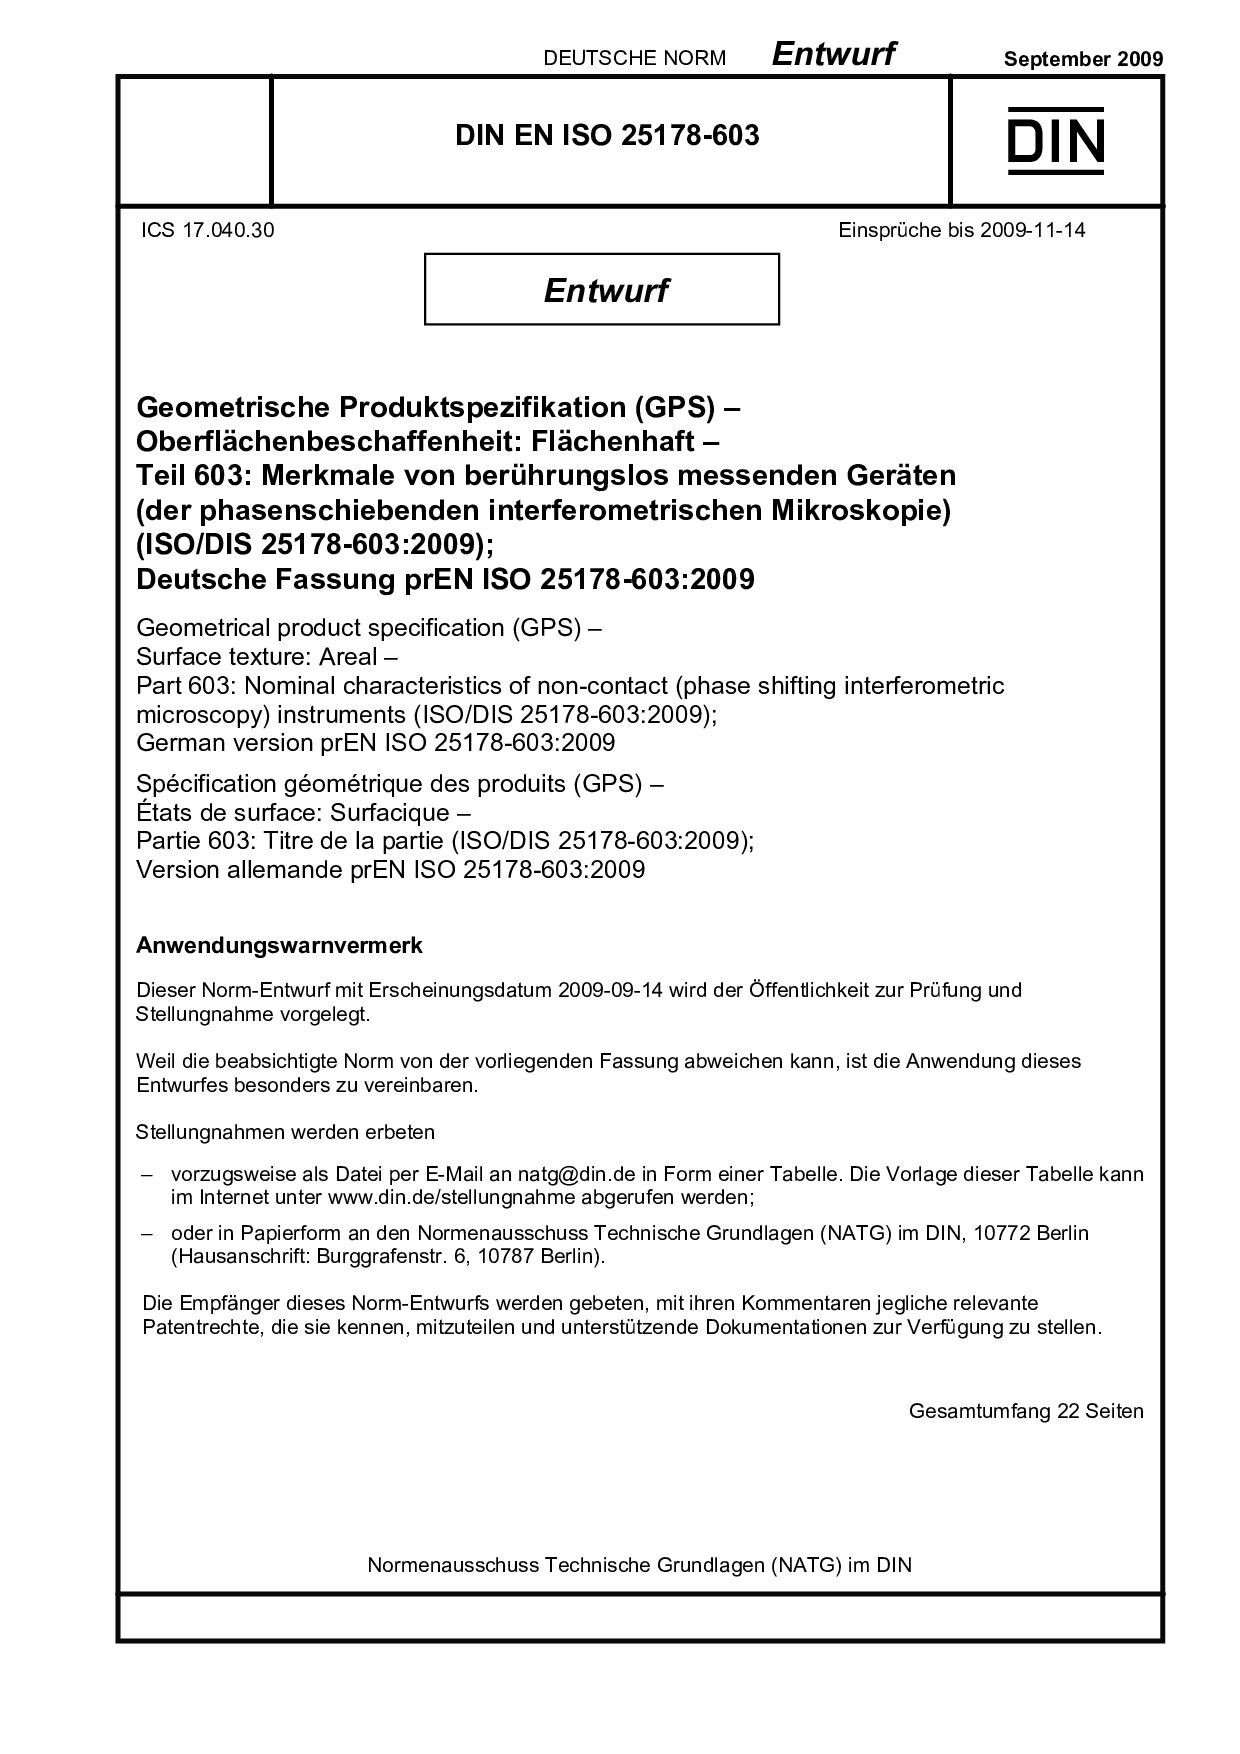 DIN EN ISO 25178-603 E:2009-09封面图